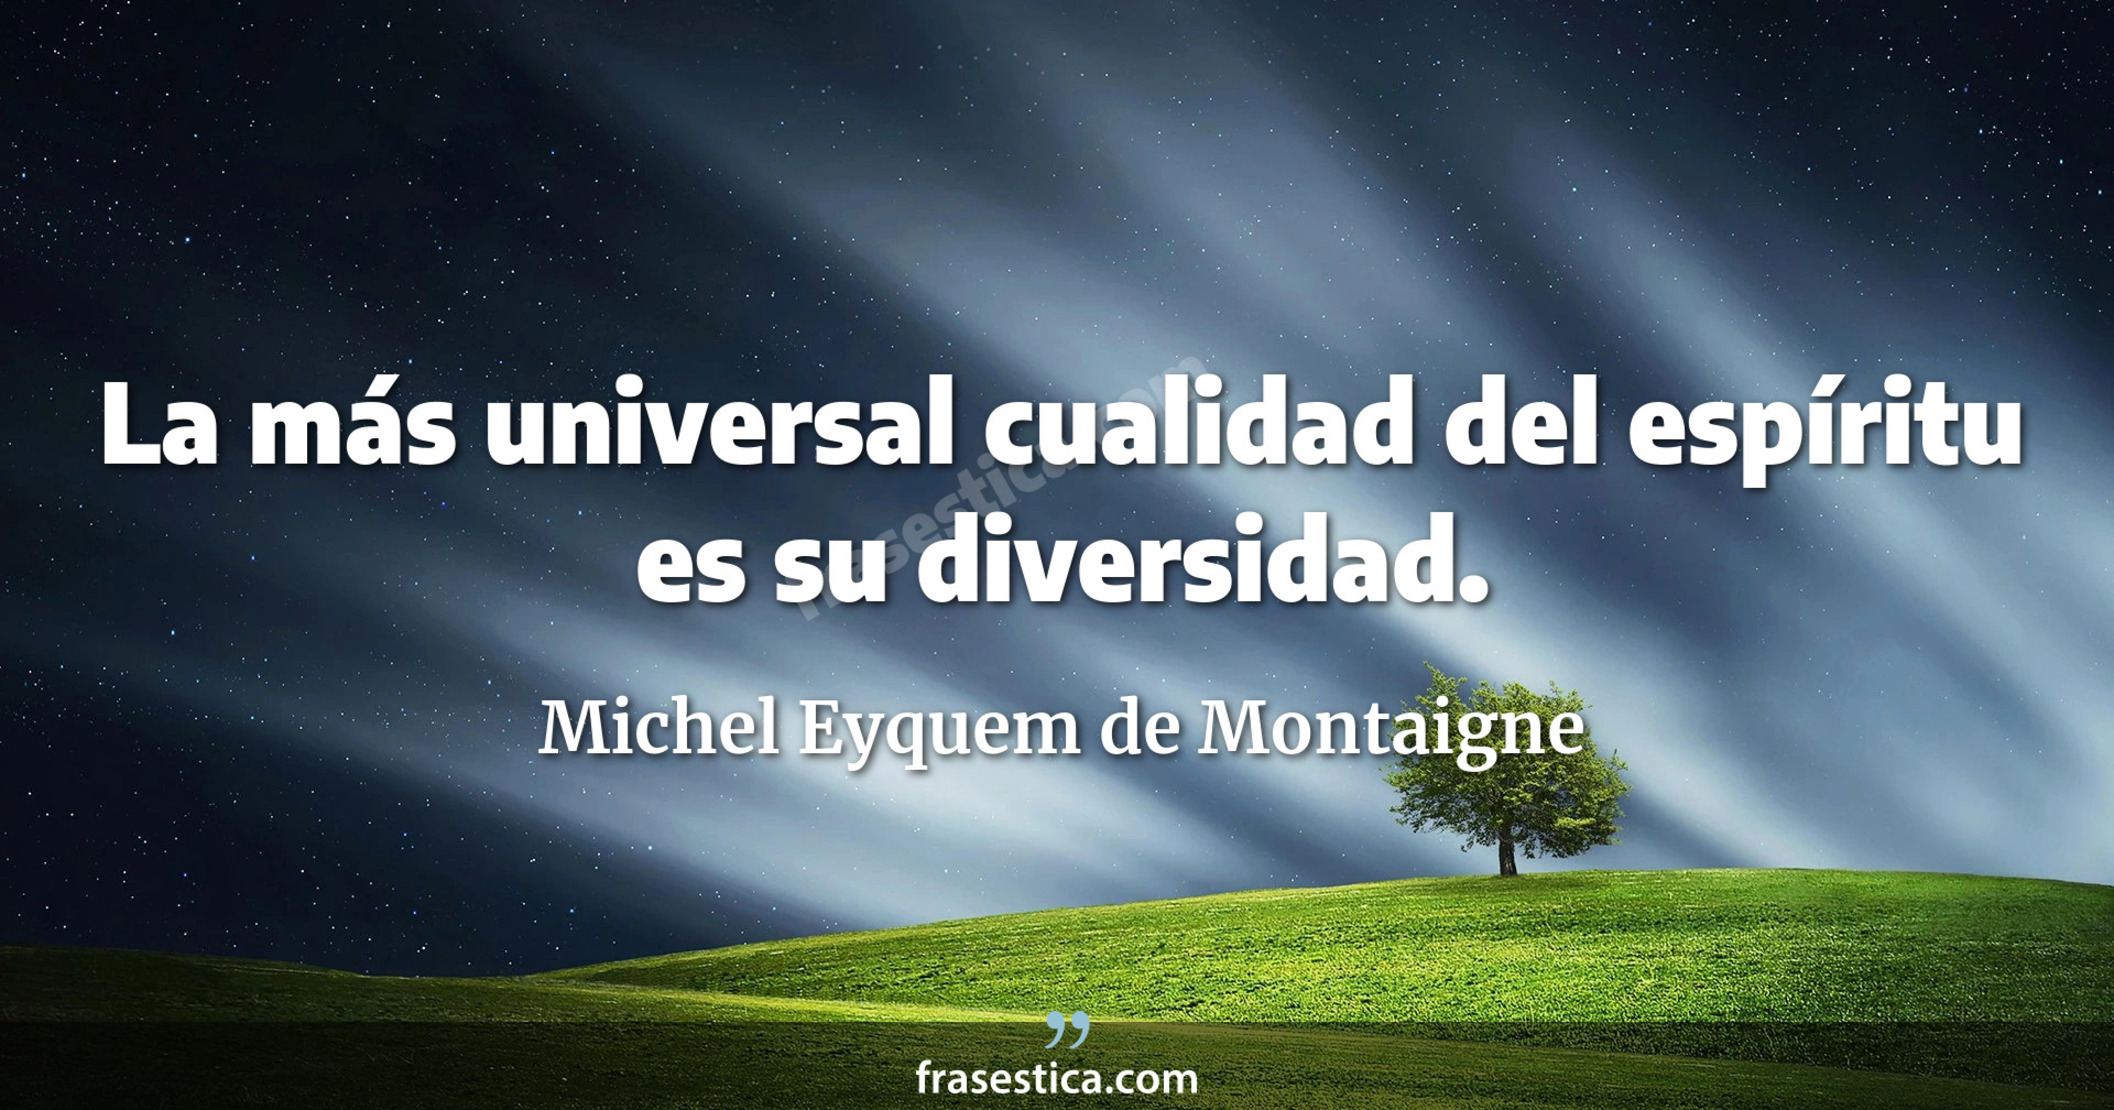 La más universal cualidad del espíritu es su diversidad. - Michel Eyquem de Montaigne